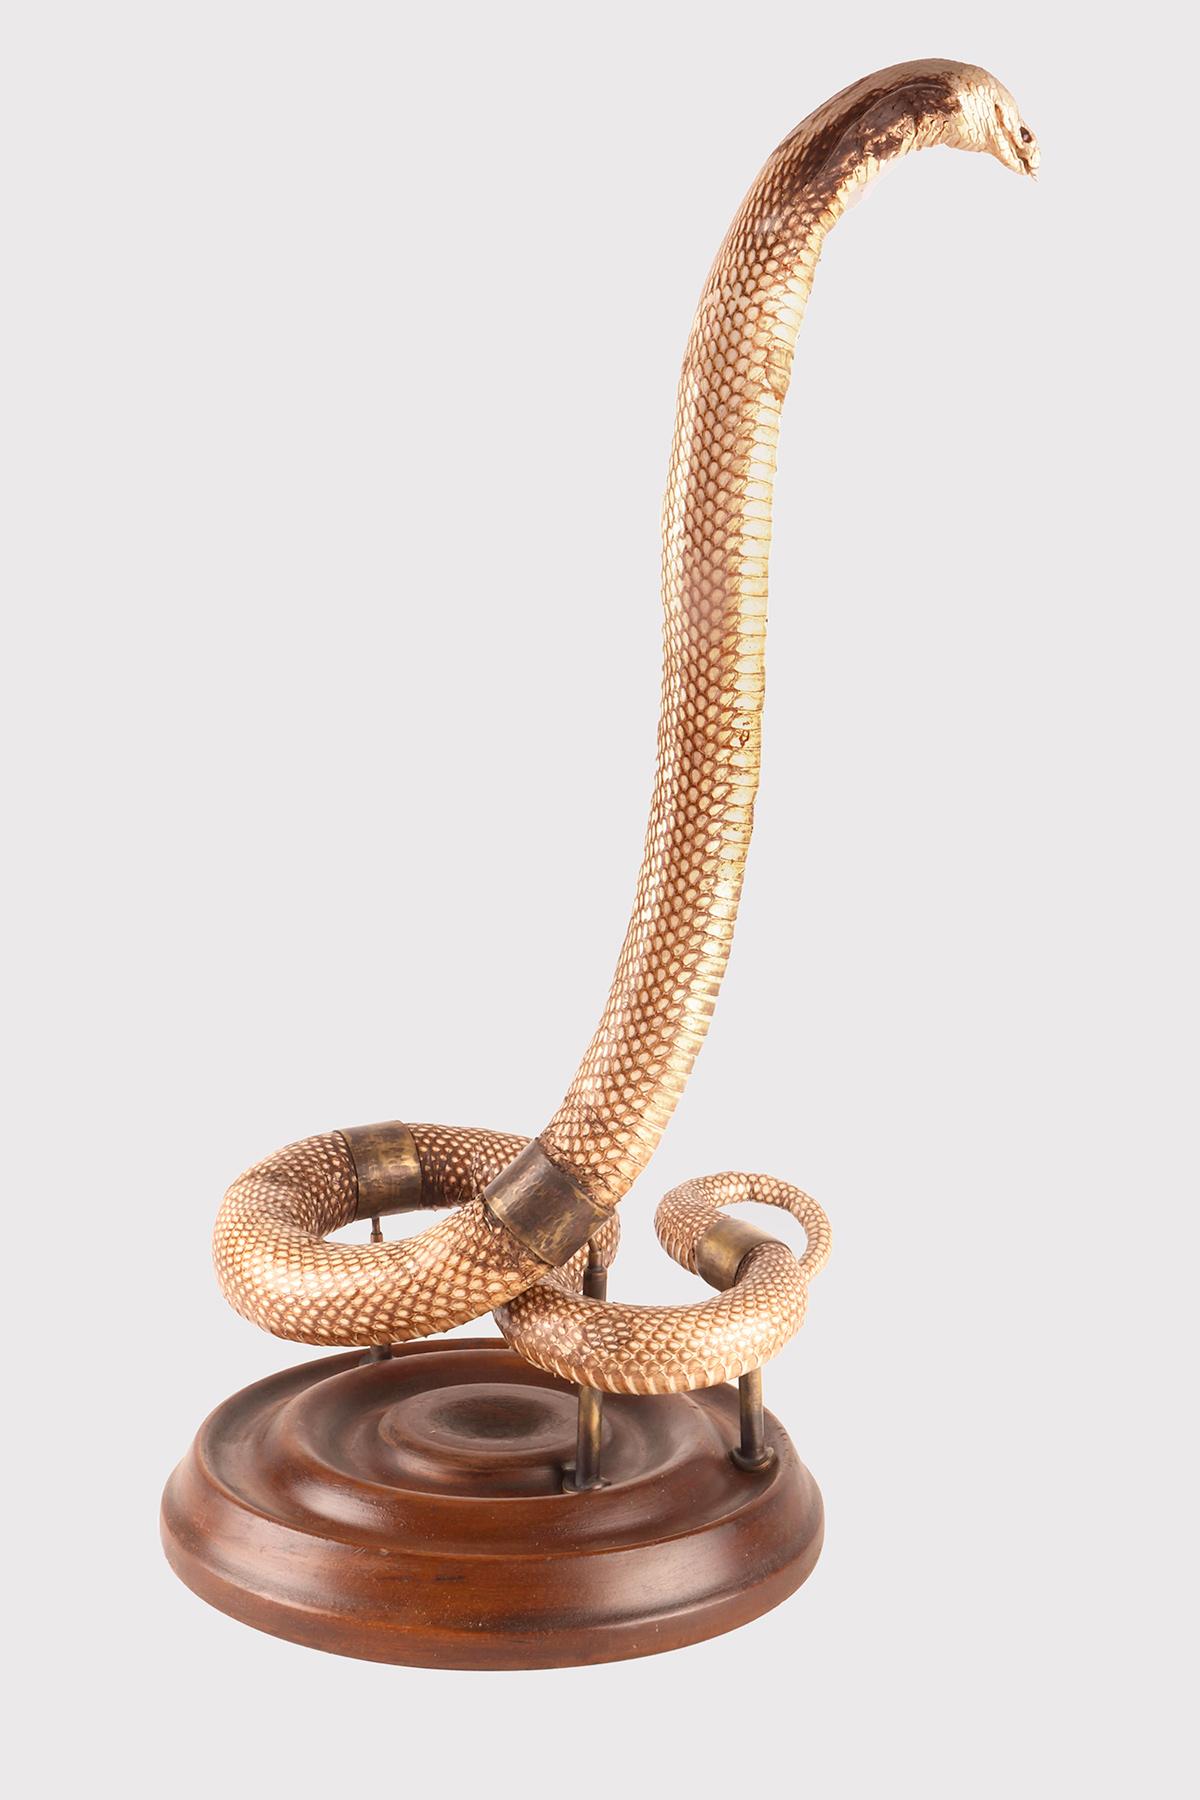 Ein Präparat der Schlange Hemachatus hemachatus (Bonnaterre 1790), einer Schlangengattung aus der Familie der Elapidae, die gemeinhin als Kobra bekannt ist. Exemplare aus dem Natural History Laboratory in Angriffshaltung. Das Exemplar ist auf einem